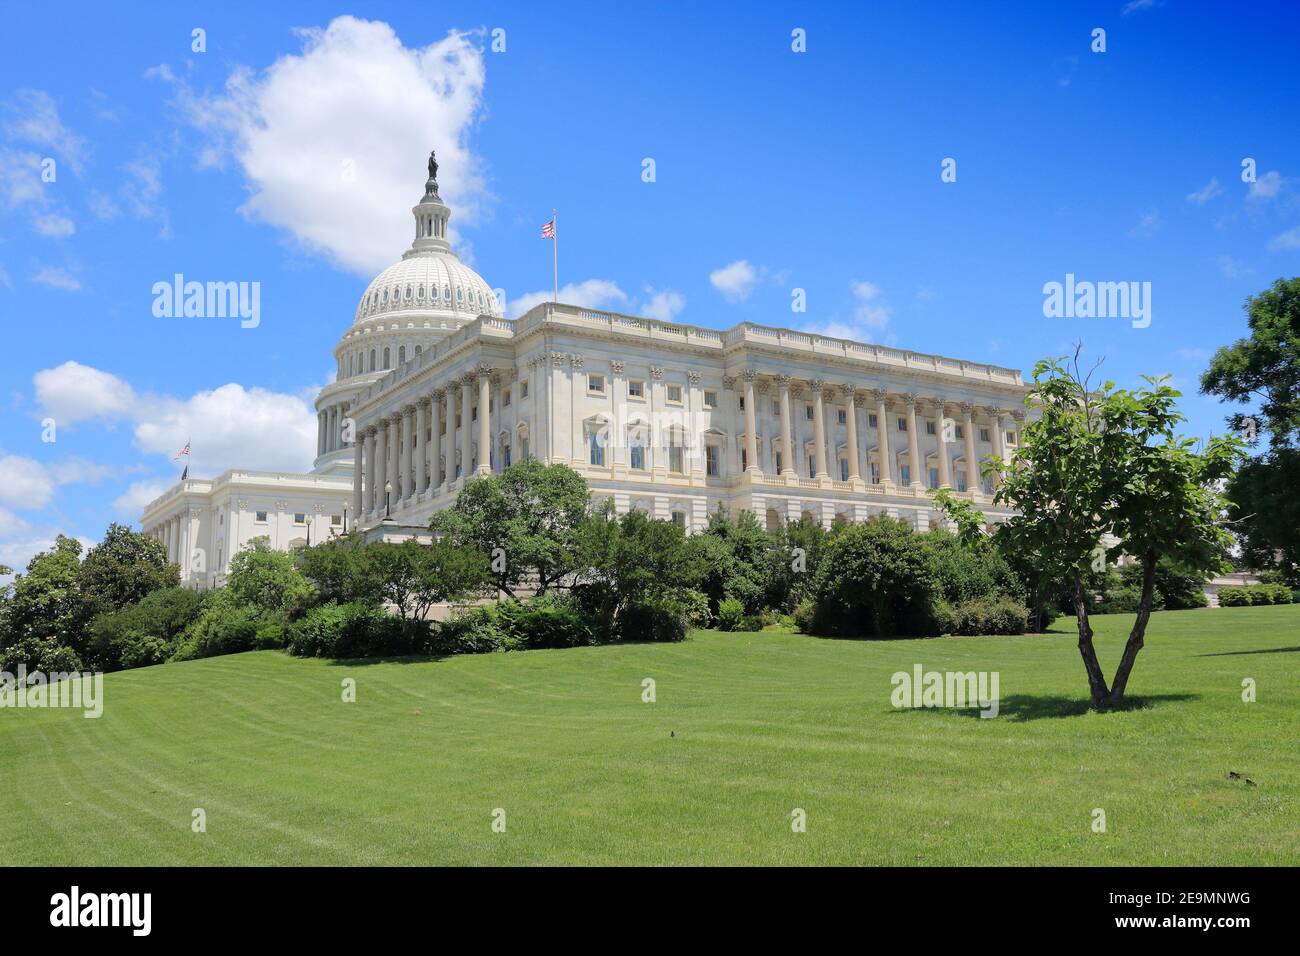 Capitole NATIONAL DES ÉTATS-UNIS. Point de repère à Washington, DC. Capitole des États-Unis. Banque D'Images